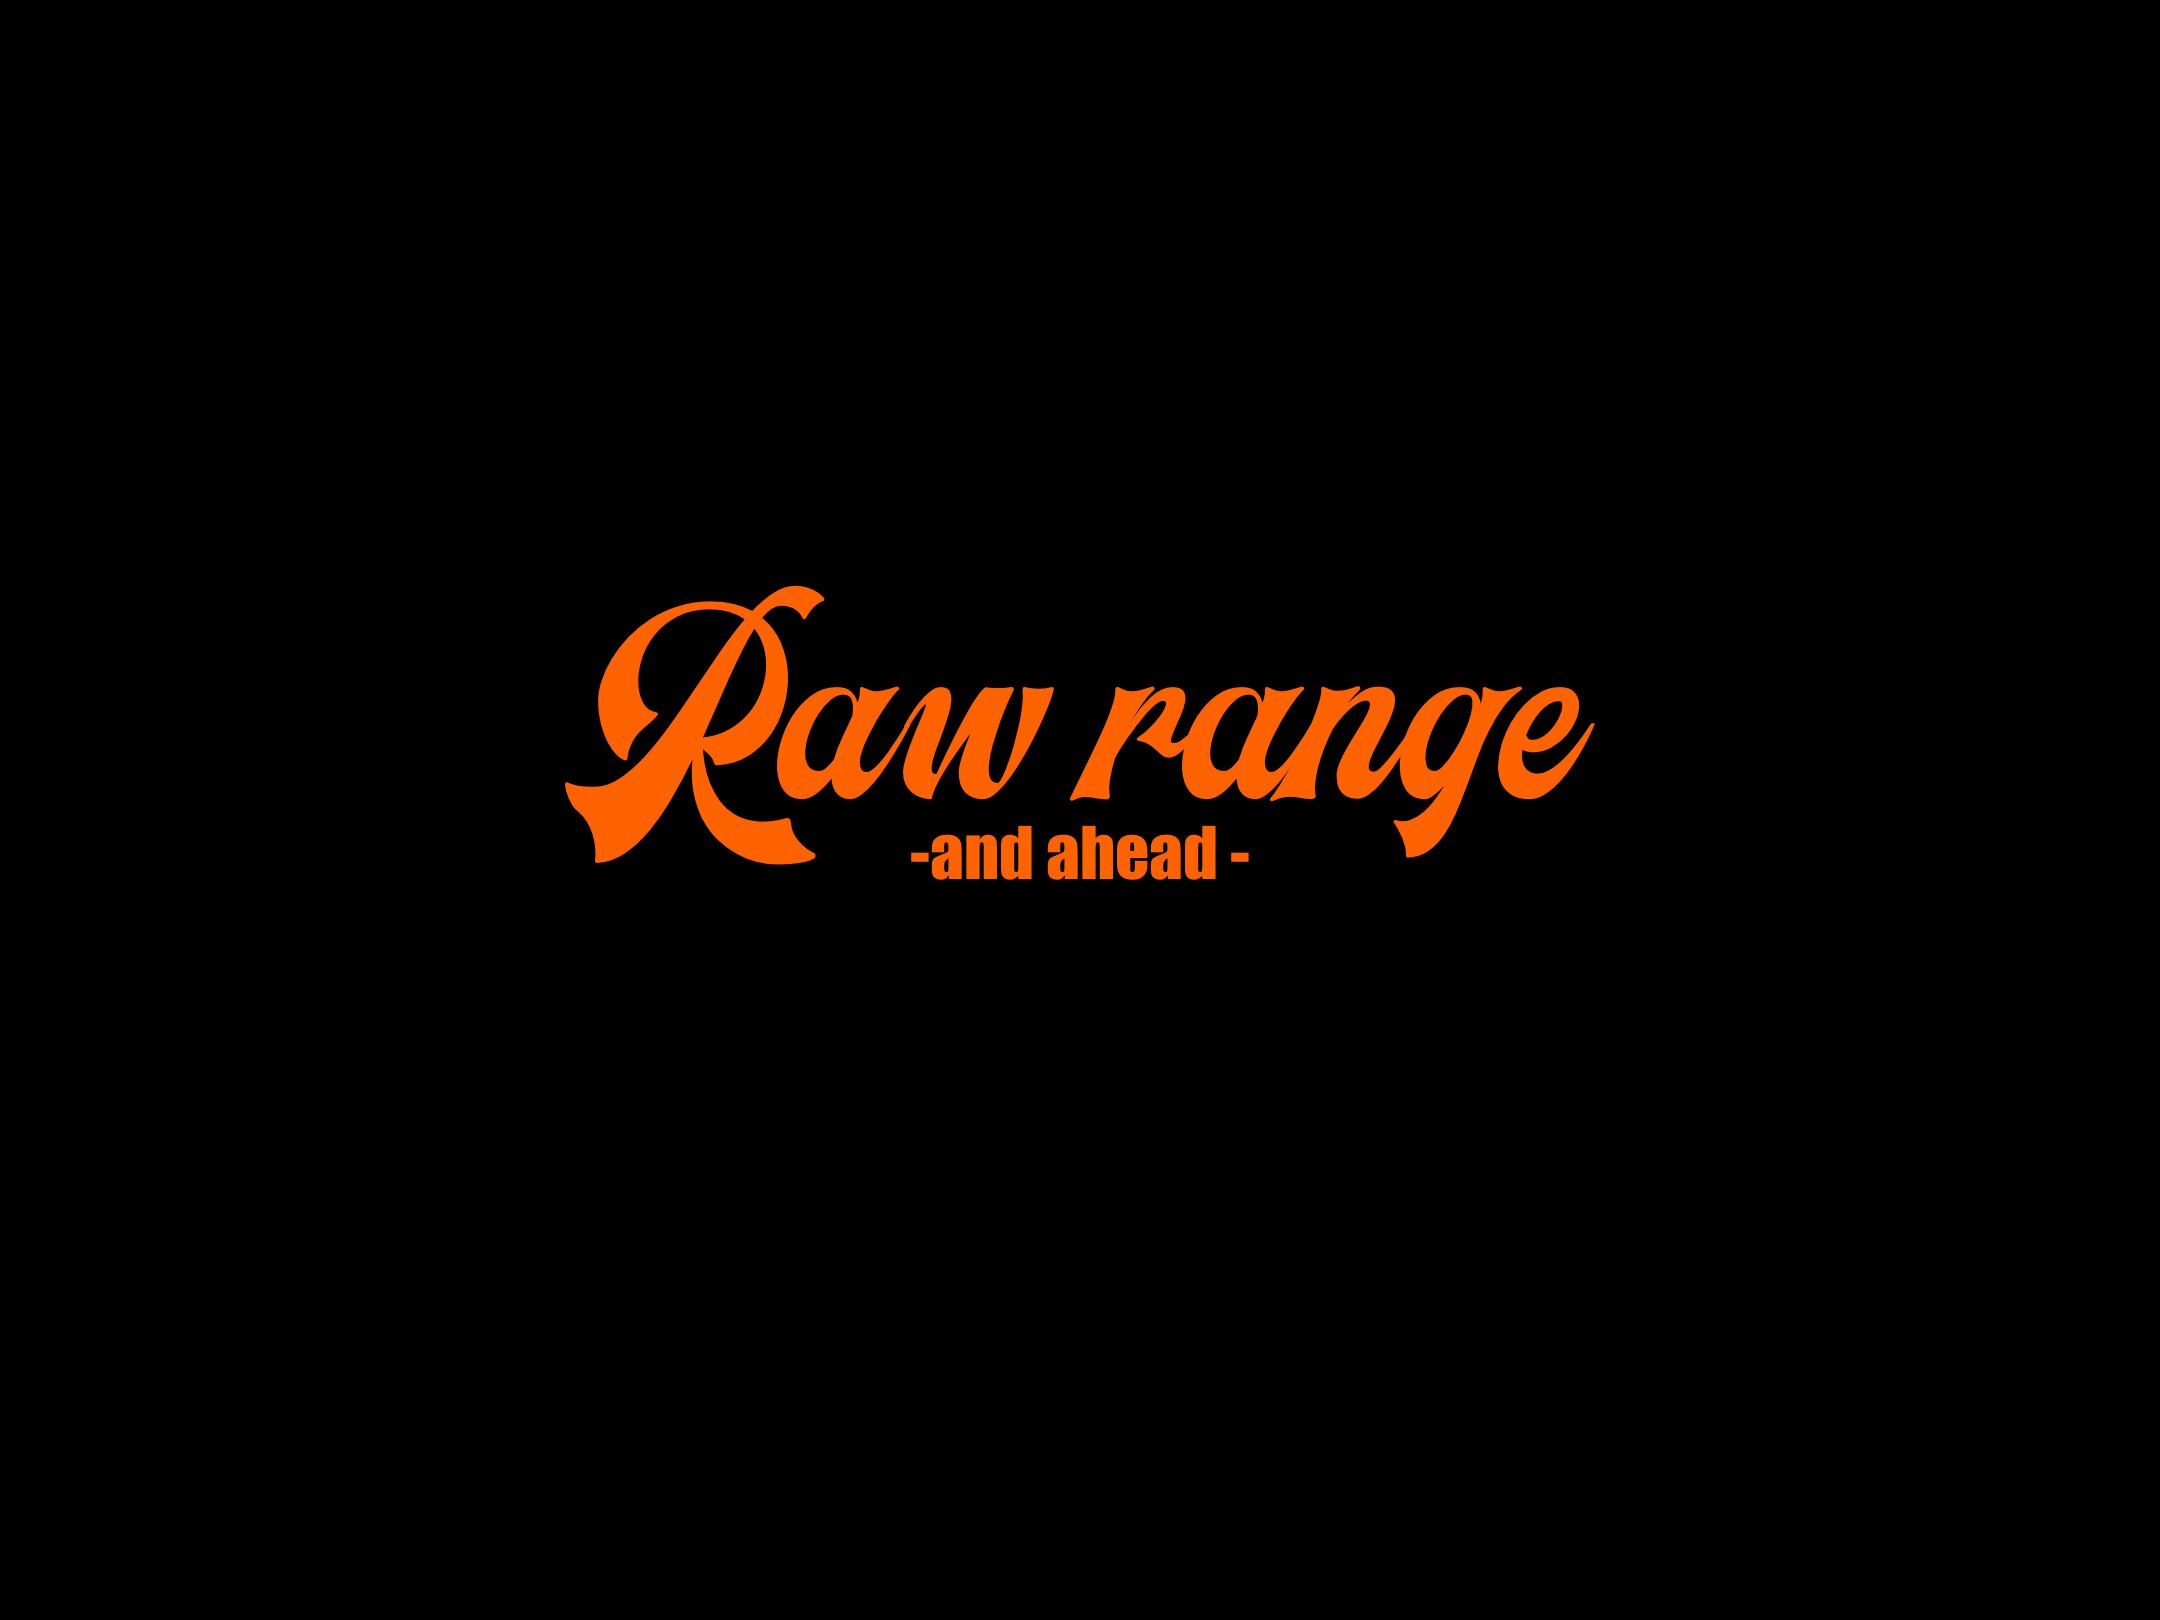 Raw range